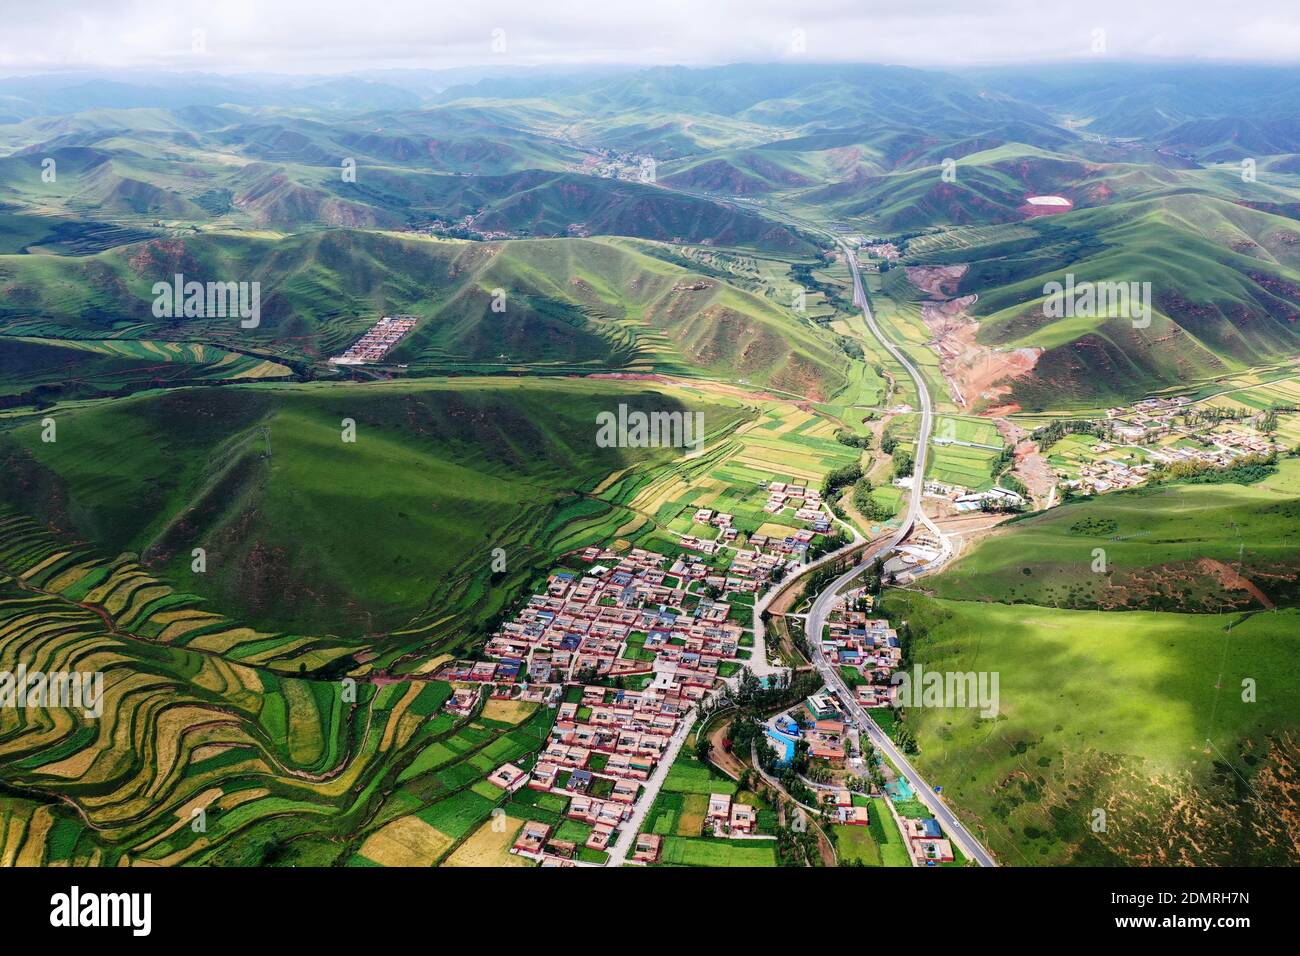 (201217) -- PECHINO, 17 dicembre 2020 (Xinhua) -- Foto aerea scattata il 12 agosto 2020 mostra una vista del Villaggio Azitan nella Contea di Zho'nyin della Prefettura Autonoma Tibetana di Gannan, nella provincia di Gansu nella Cina nord-occidentale. L'anno 2020 è un momento in cui la Cina sta elaborando il piano per il periodo 2016-2020 e si sta preparando per il suo prossimo piano generale. Nel 2020, la Cina ha intensificato gli sforzi per rafforzare i legami deboli riguardo ai mezzi di sussistenza delle persone. Sono state introdotte molte misure per affrontare le preoccupazioni delle persone in materia di occupazione, istruzione, servizi medici di base, assistenza agli anziani, alloggi, servizi pubblici, ecc. (Xi Foto Stock